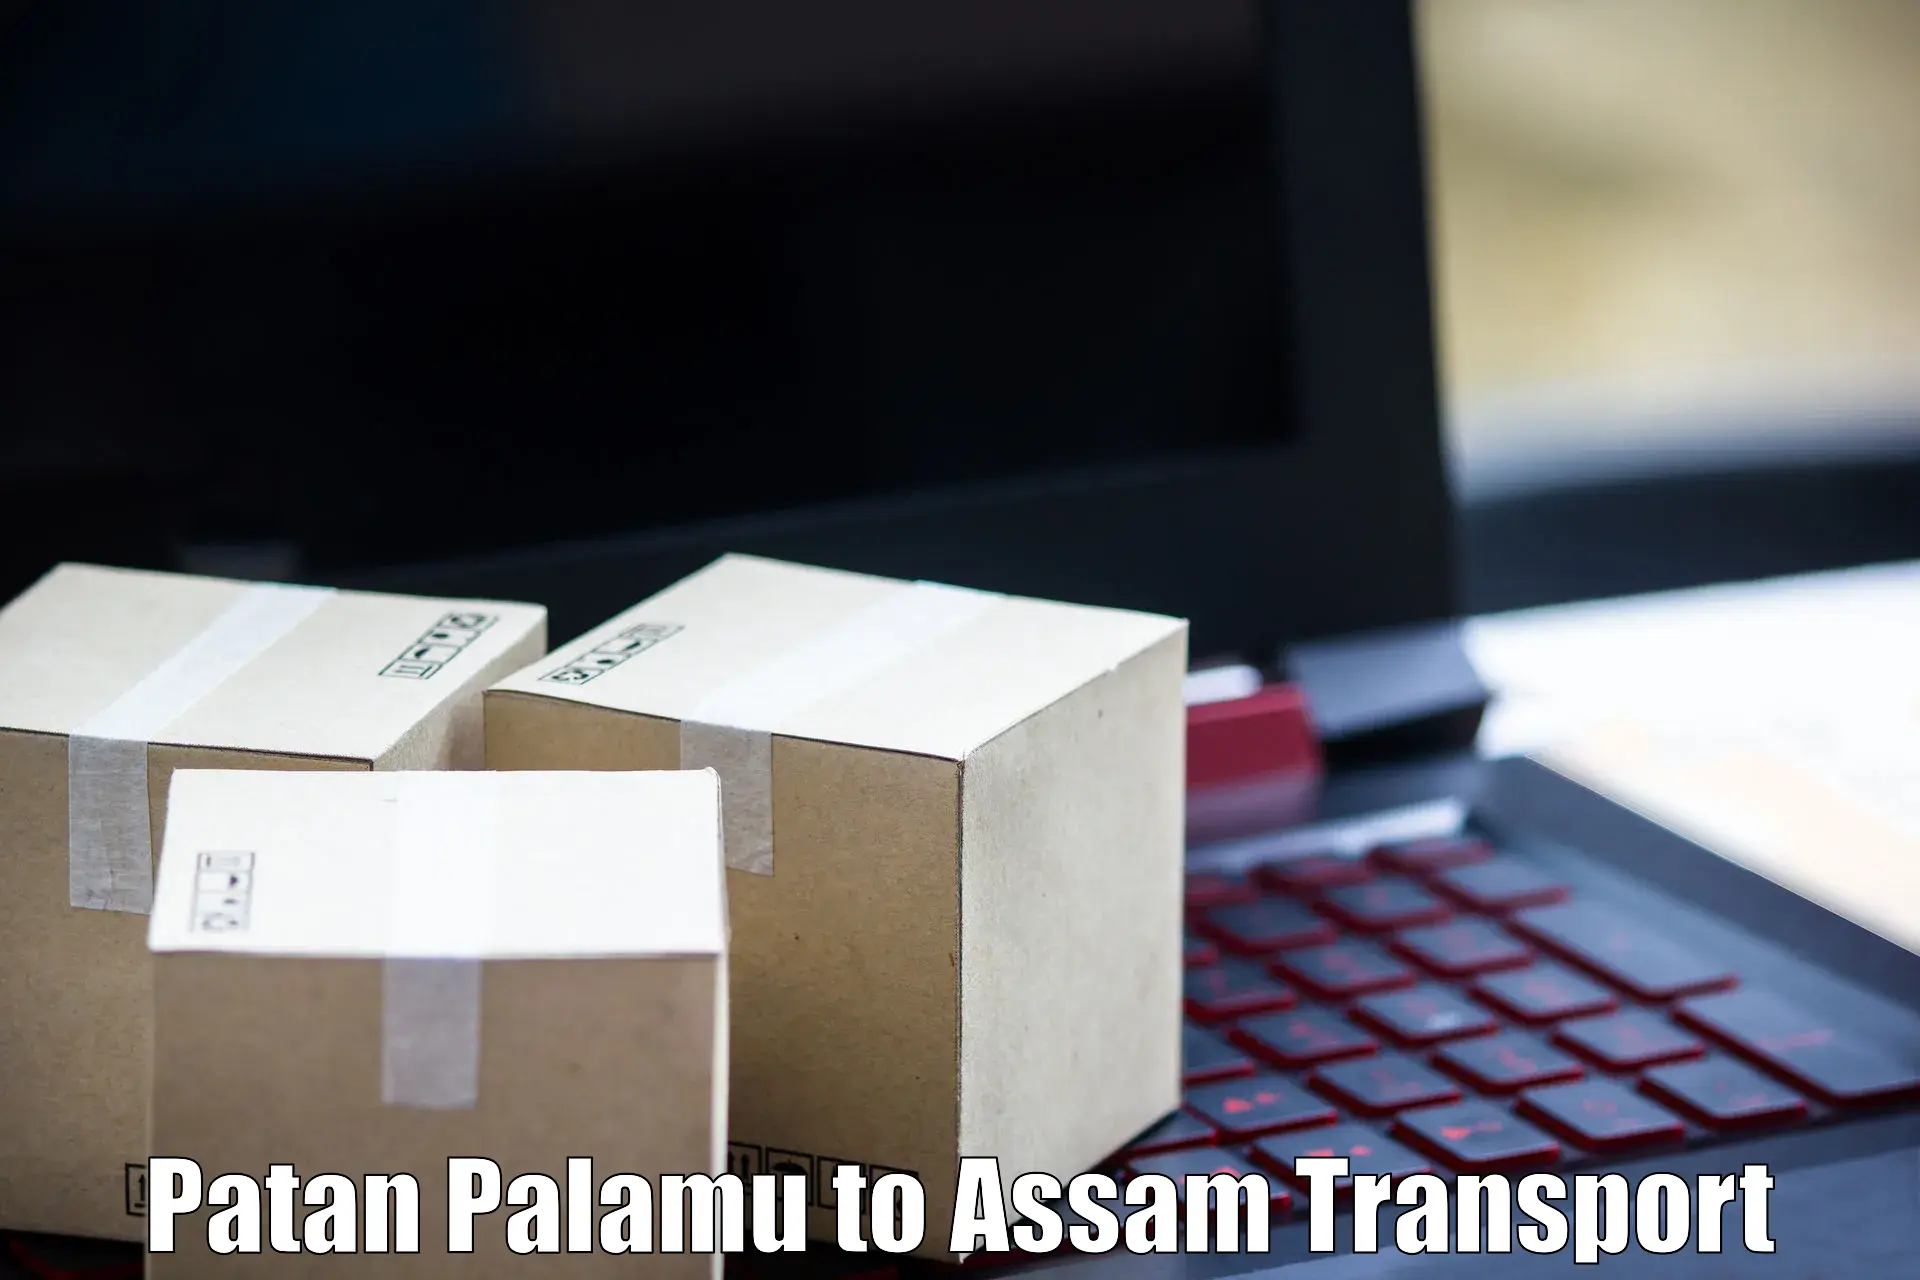 Online transport booking Patan Palamu to Dhubri